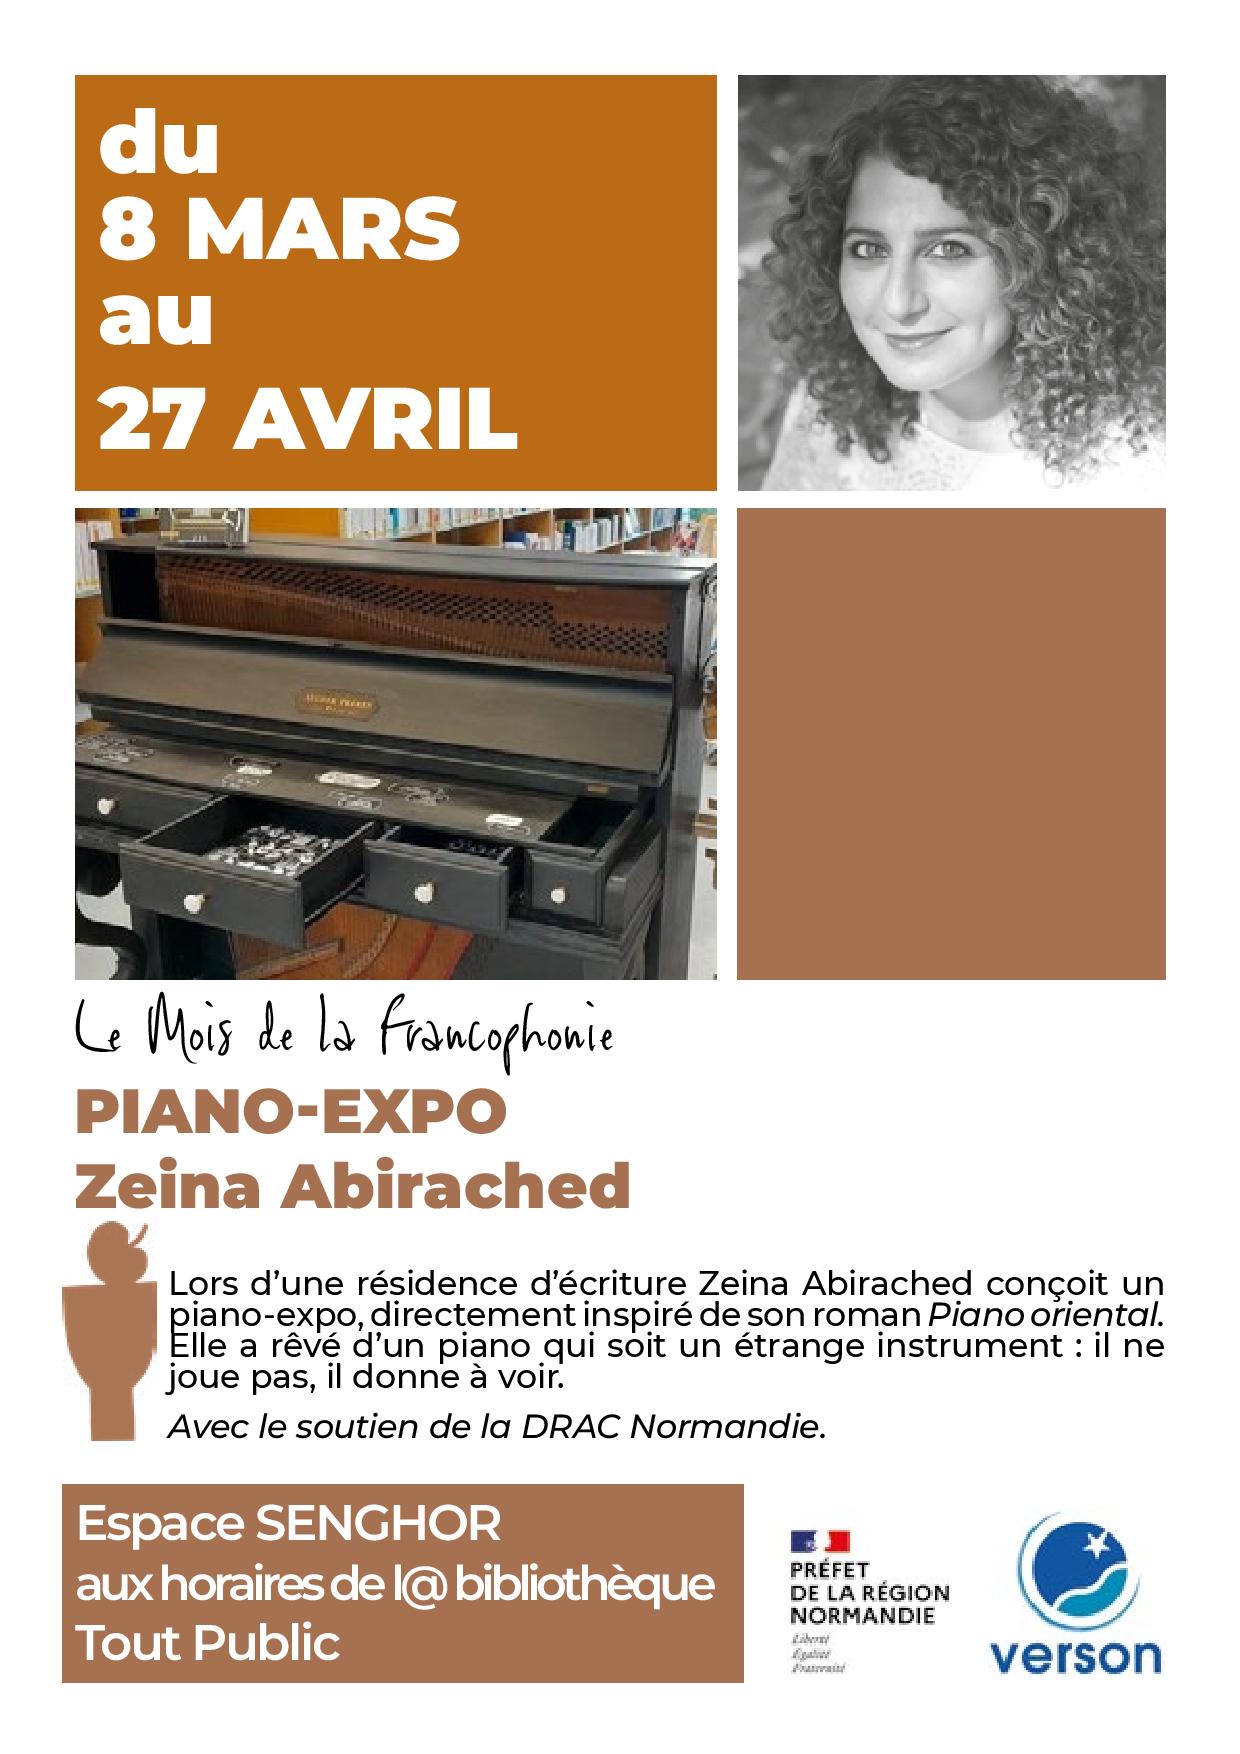 Le Piano-Expo - Zeina Abirached - Le Mois de la Francophonie | 